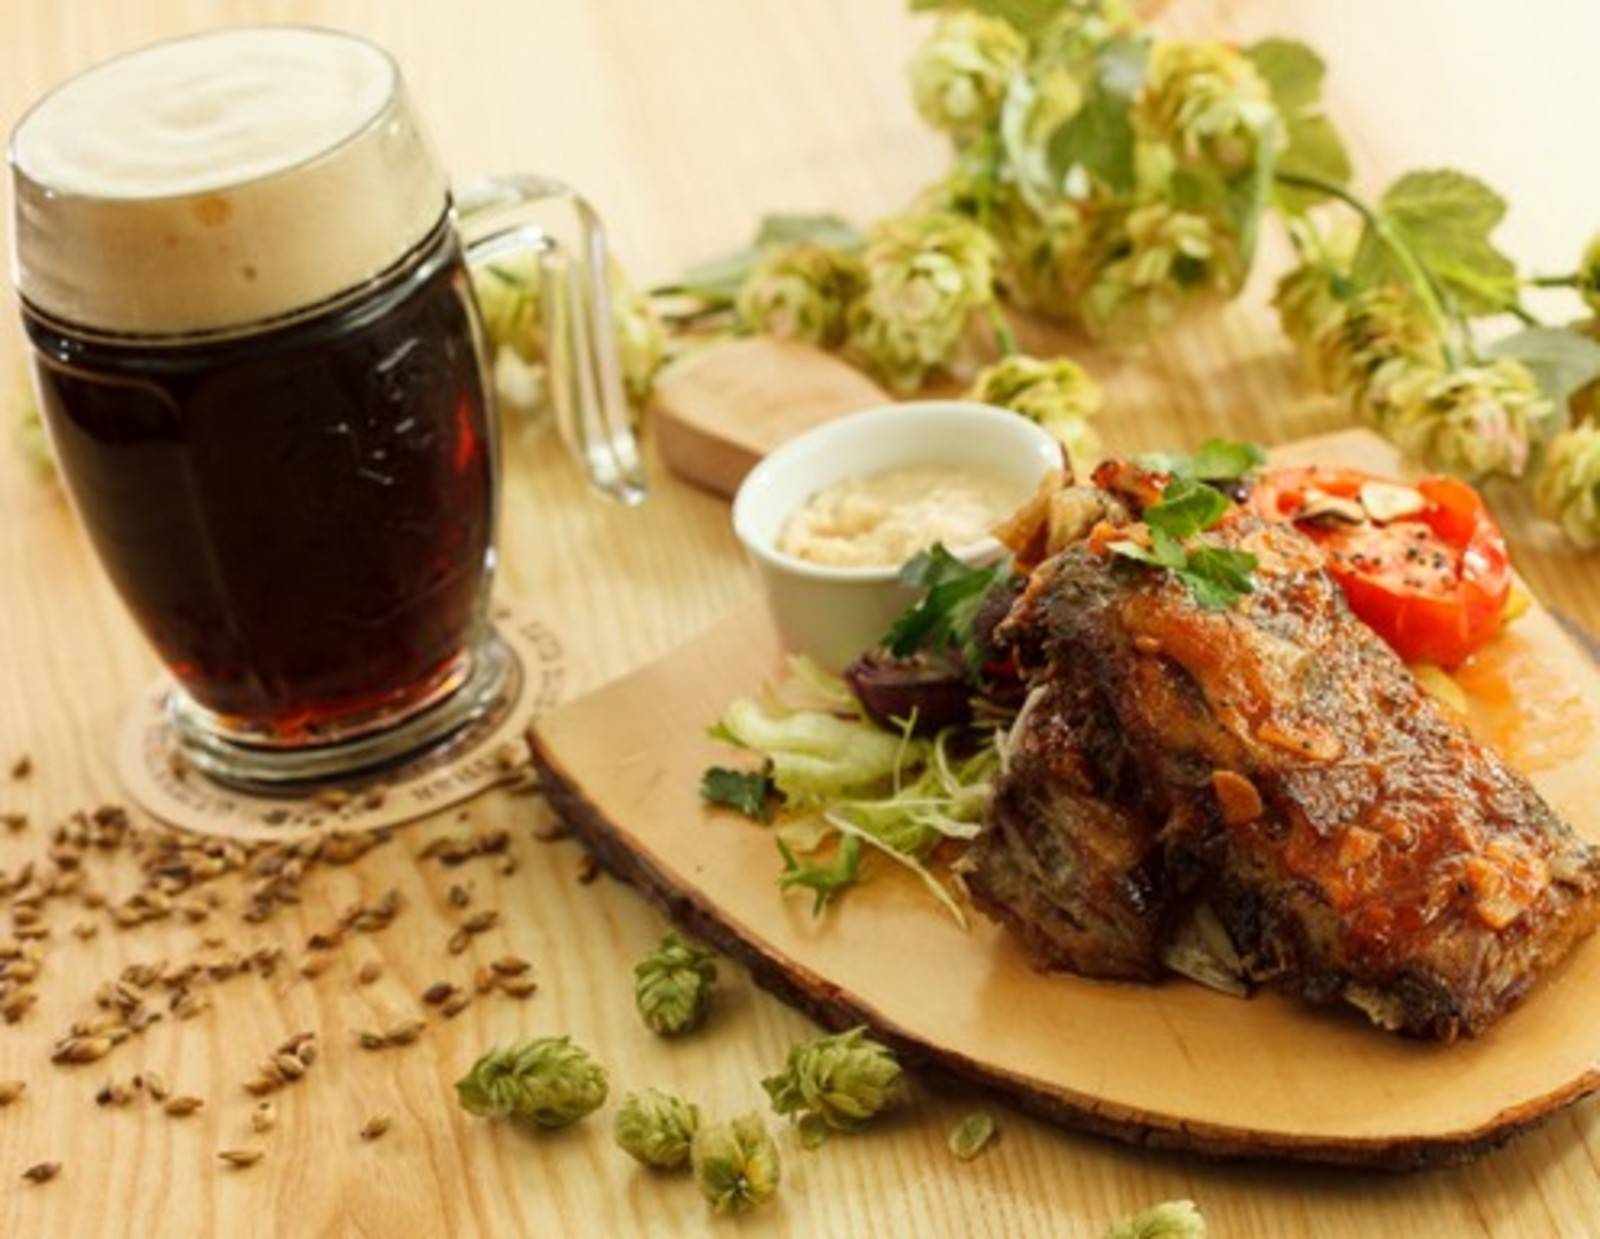 Foodpairing Bier und Steak